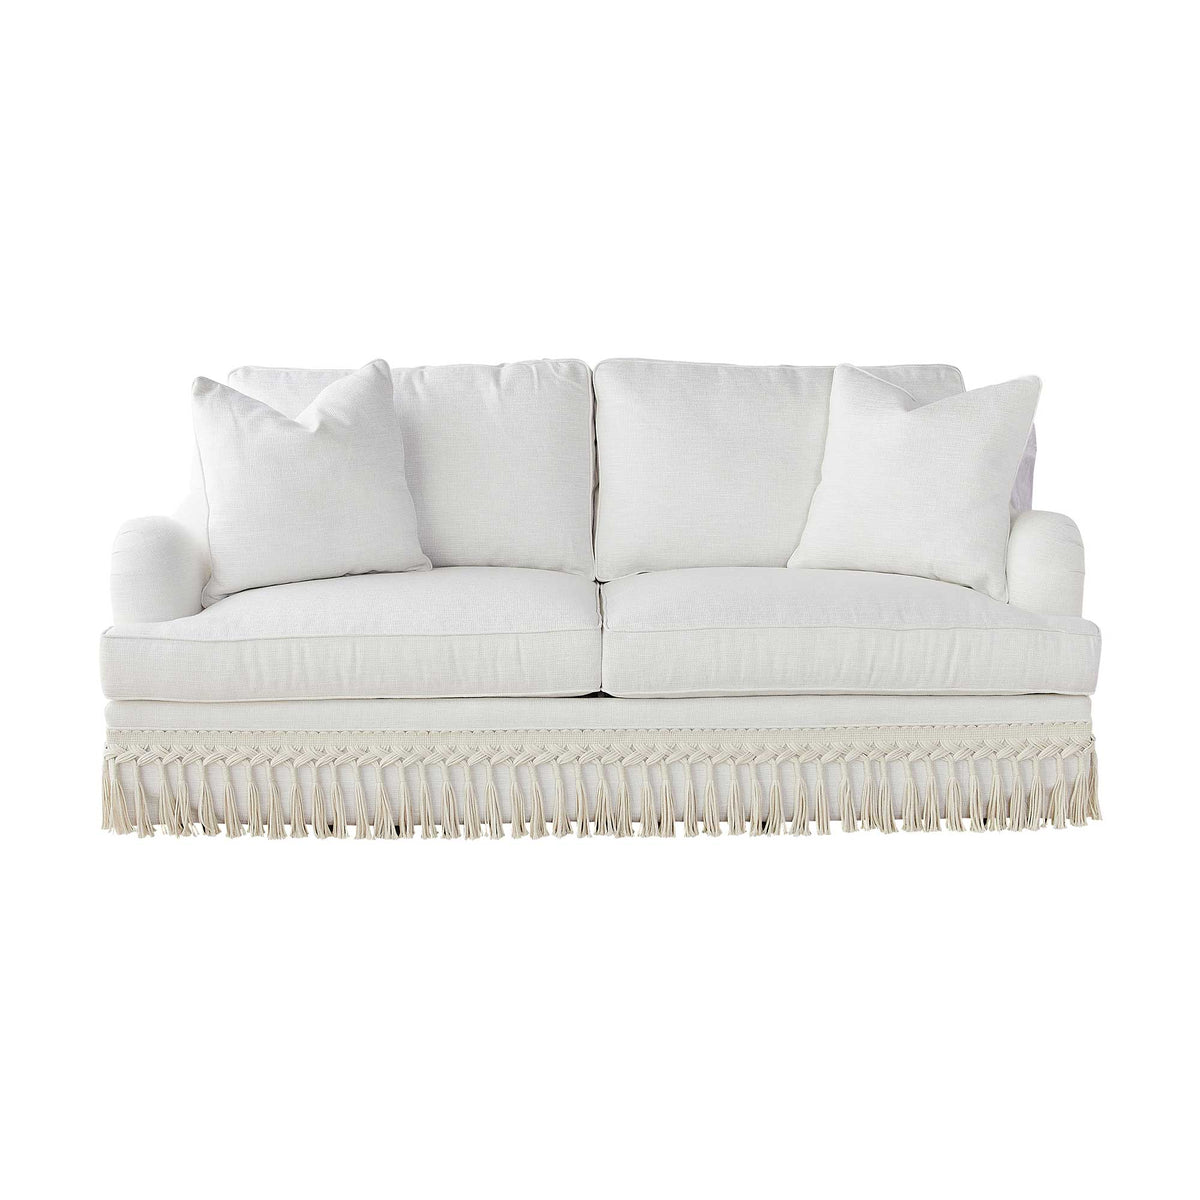 London Fringe Sofa in Natural White